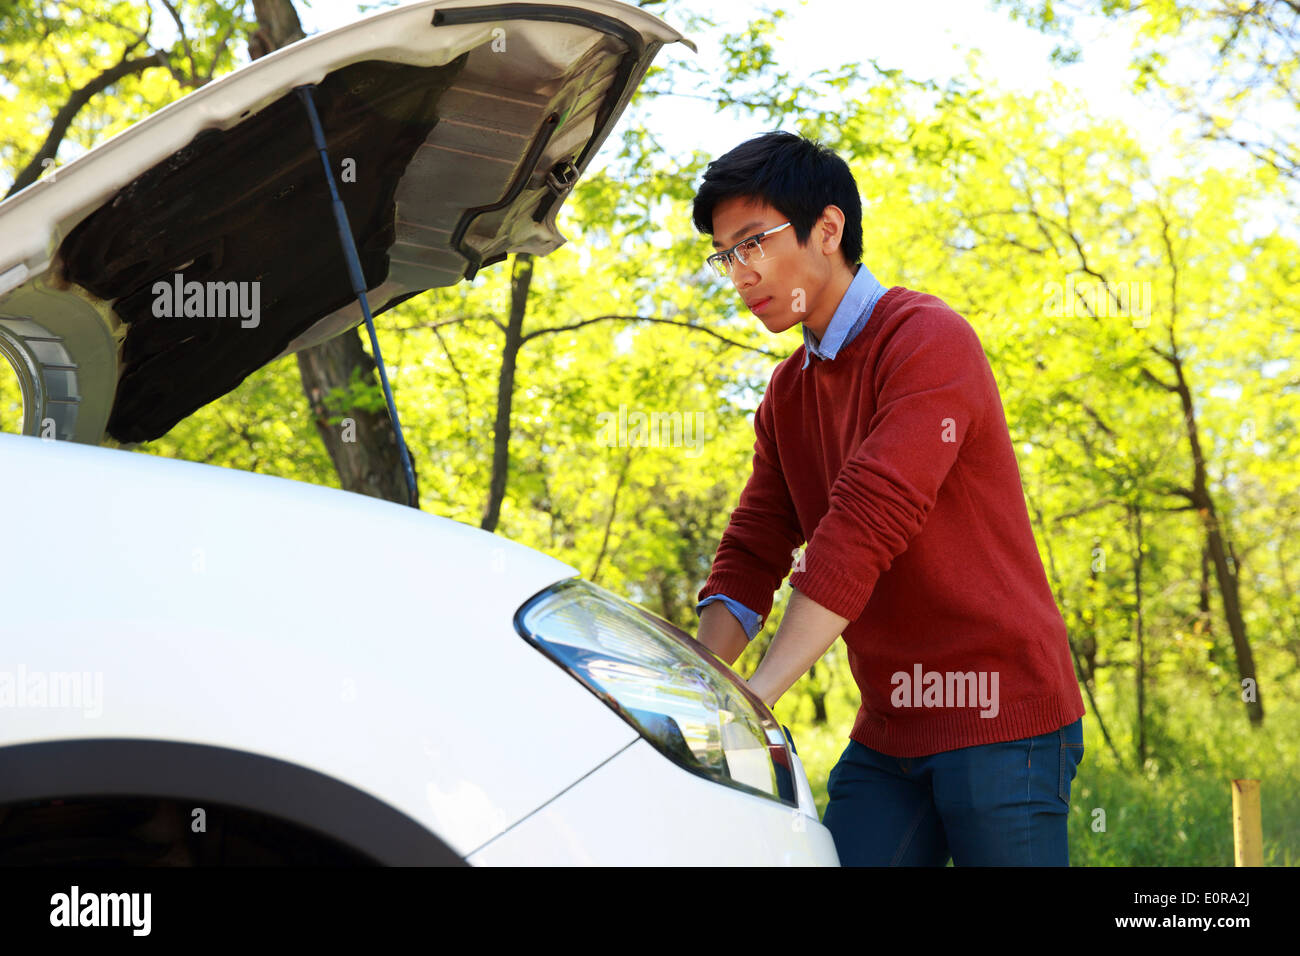 Vue latérale du portrait d'un jeune homme asiatique contrôler son moteur de voiture Banque D'Images